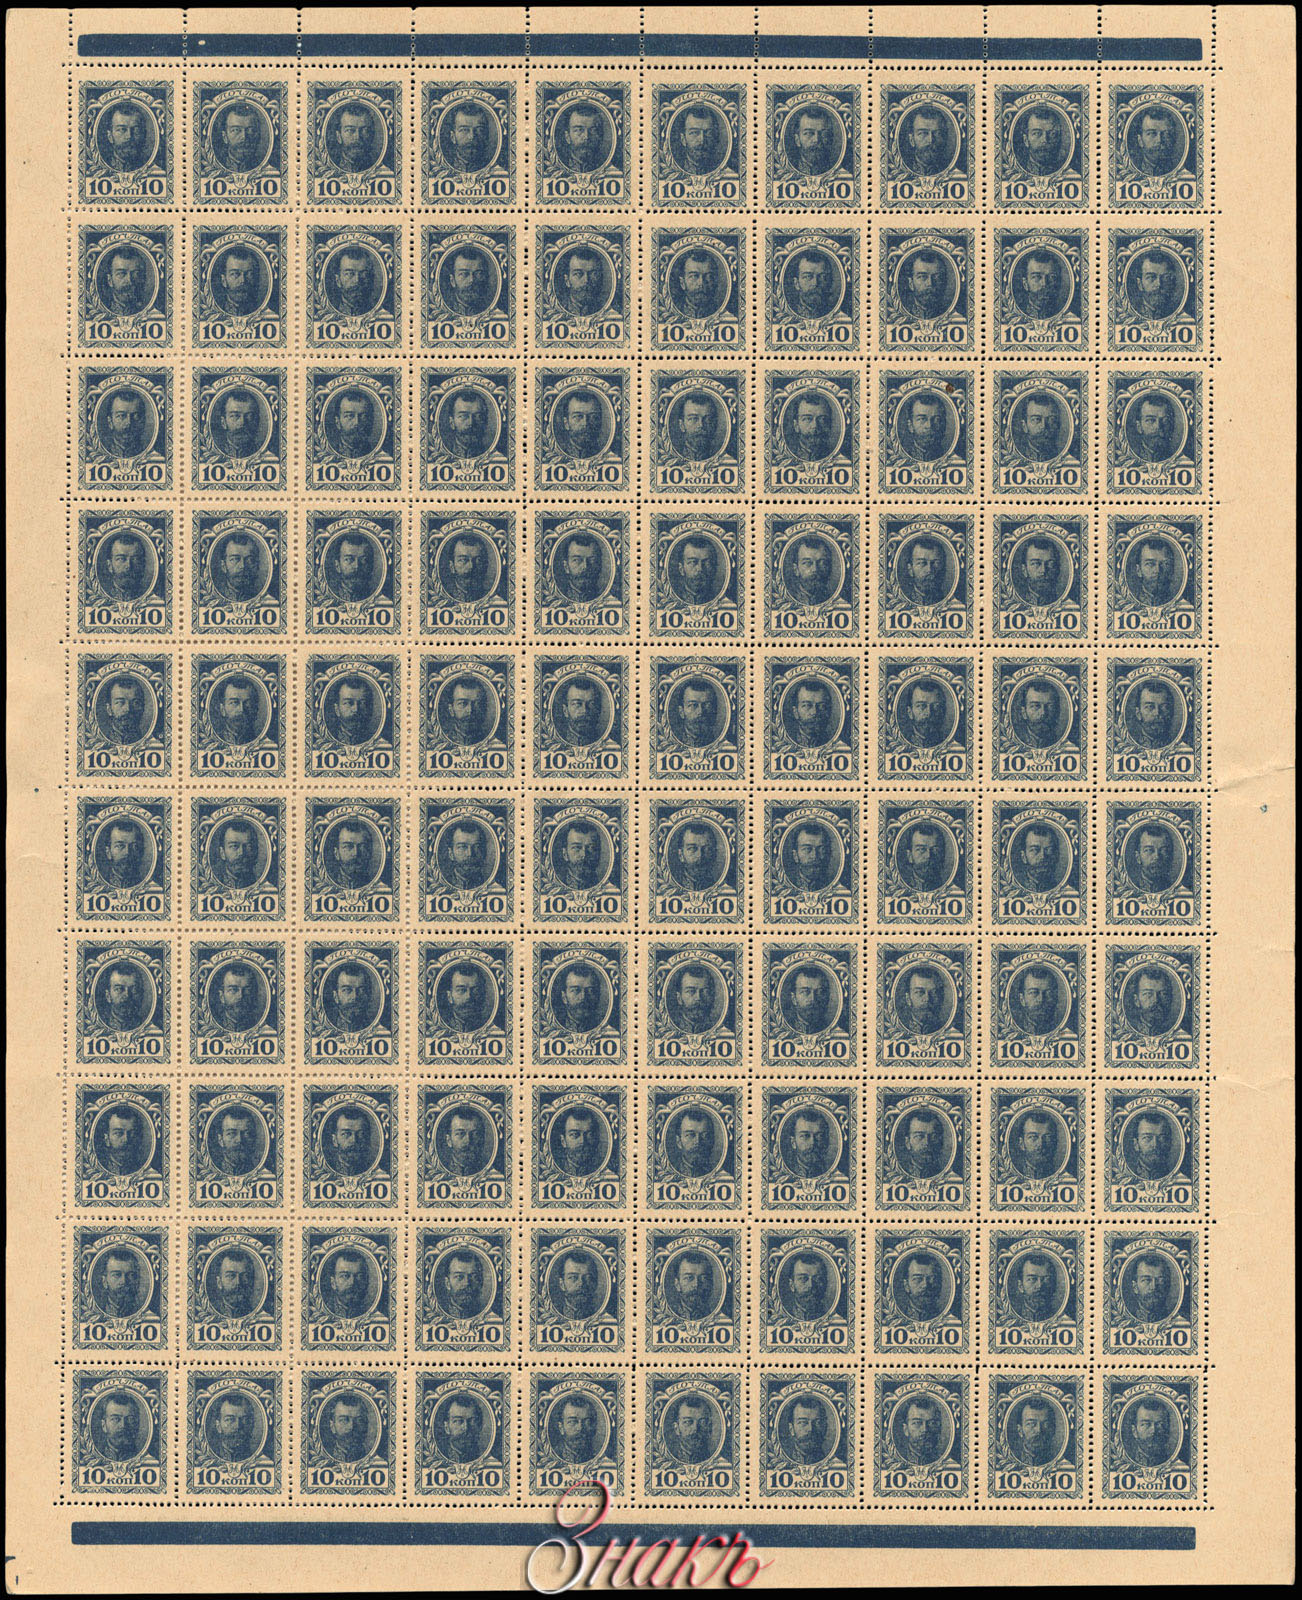   10  1915   100  (10  10) 